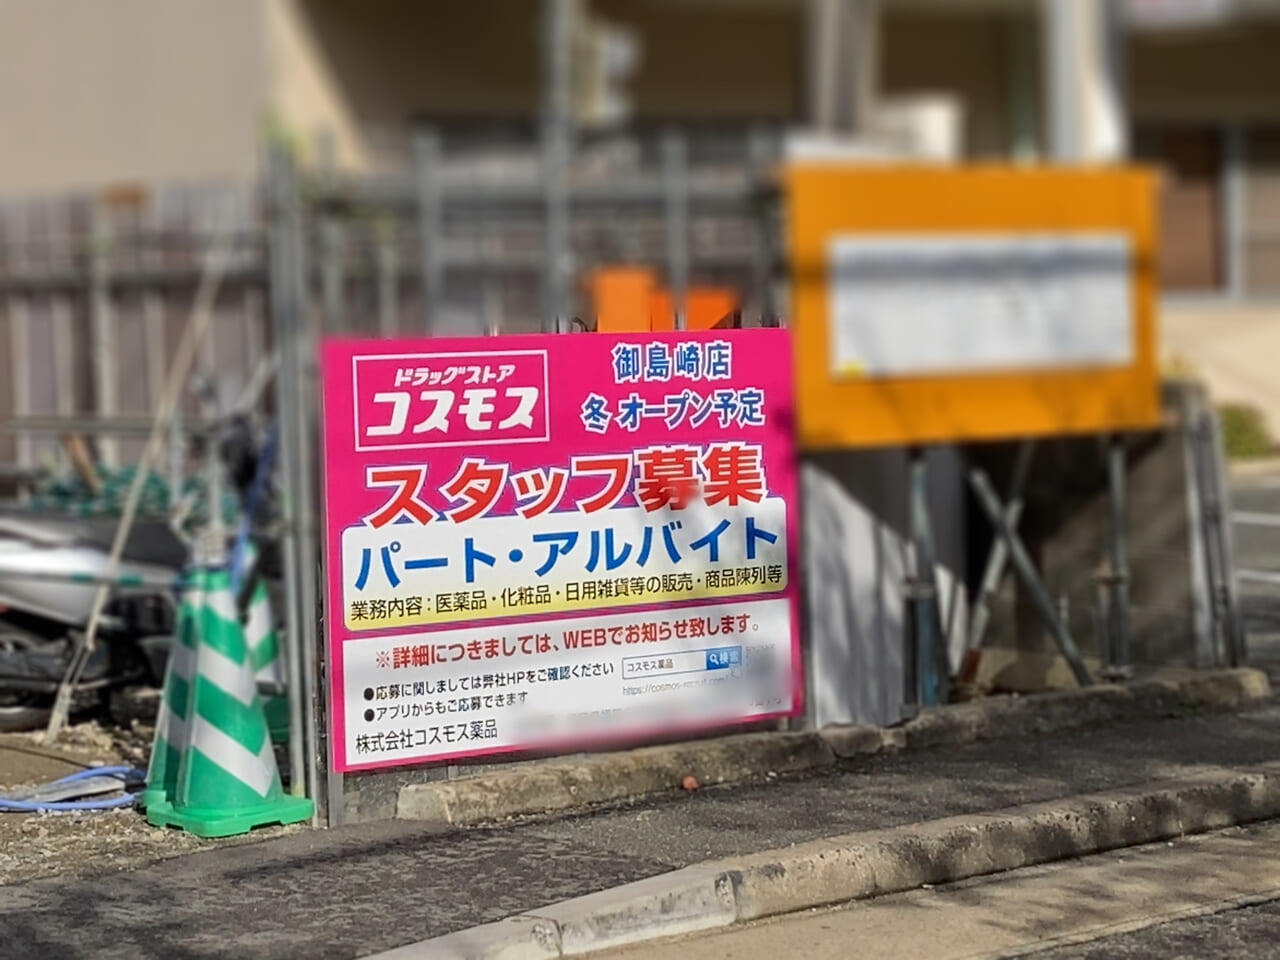 御島崎公園近くに、「コスモス 御島崎店」が今冬にオープン予定です。